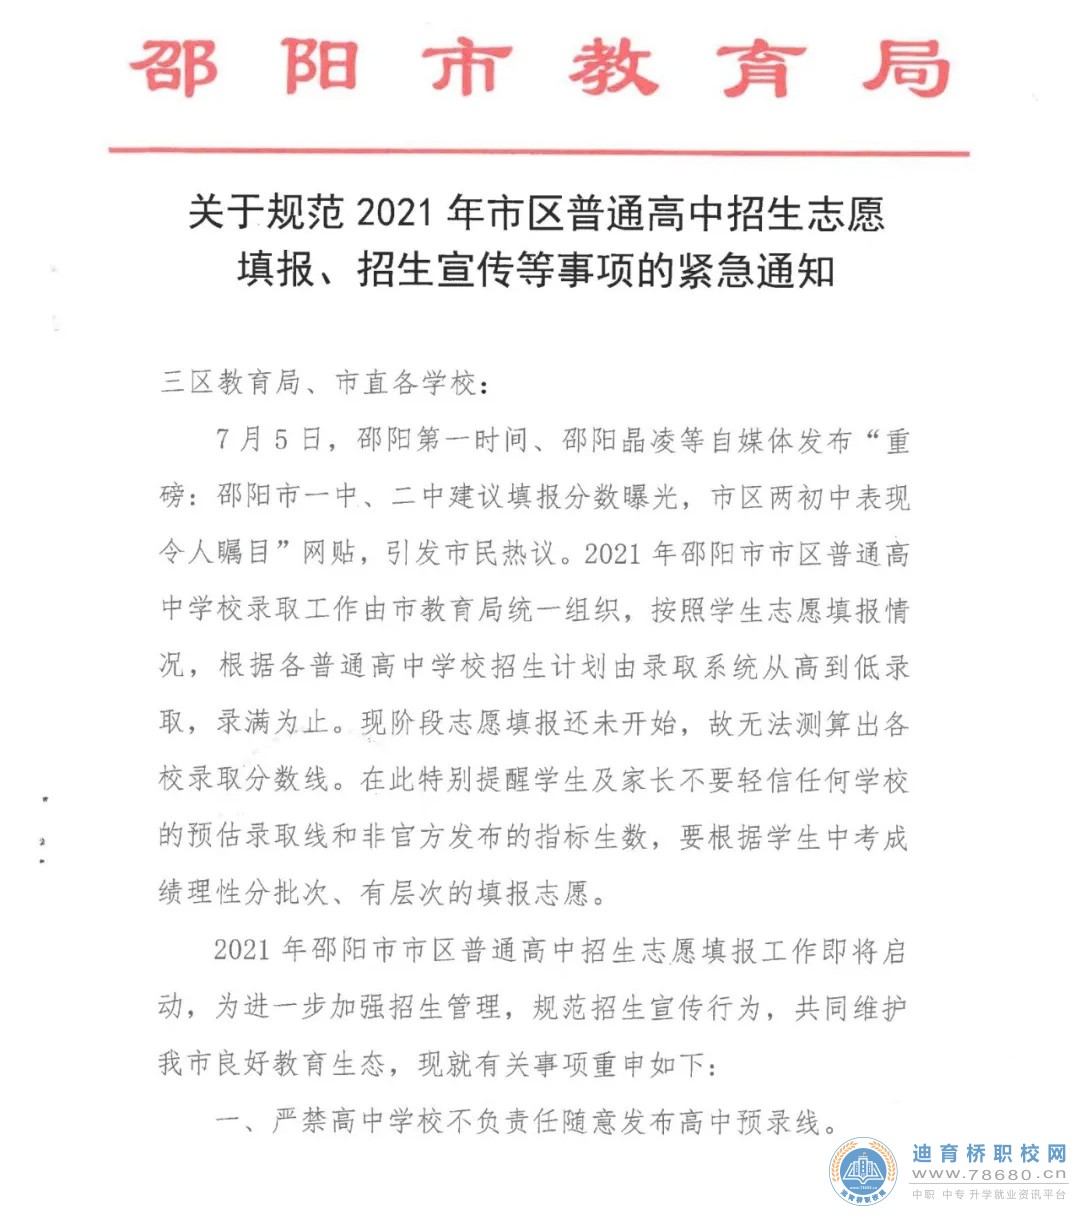 邵阳市教育局关于规范2021年市区普通高中招生志愿填报、招生宣传等事项的紧急通知